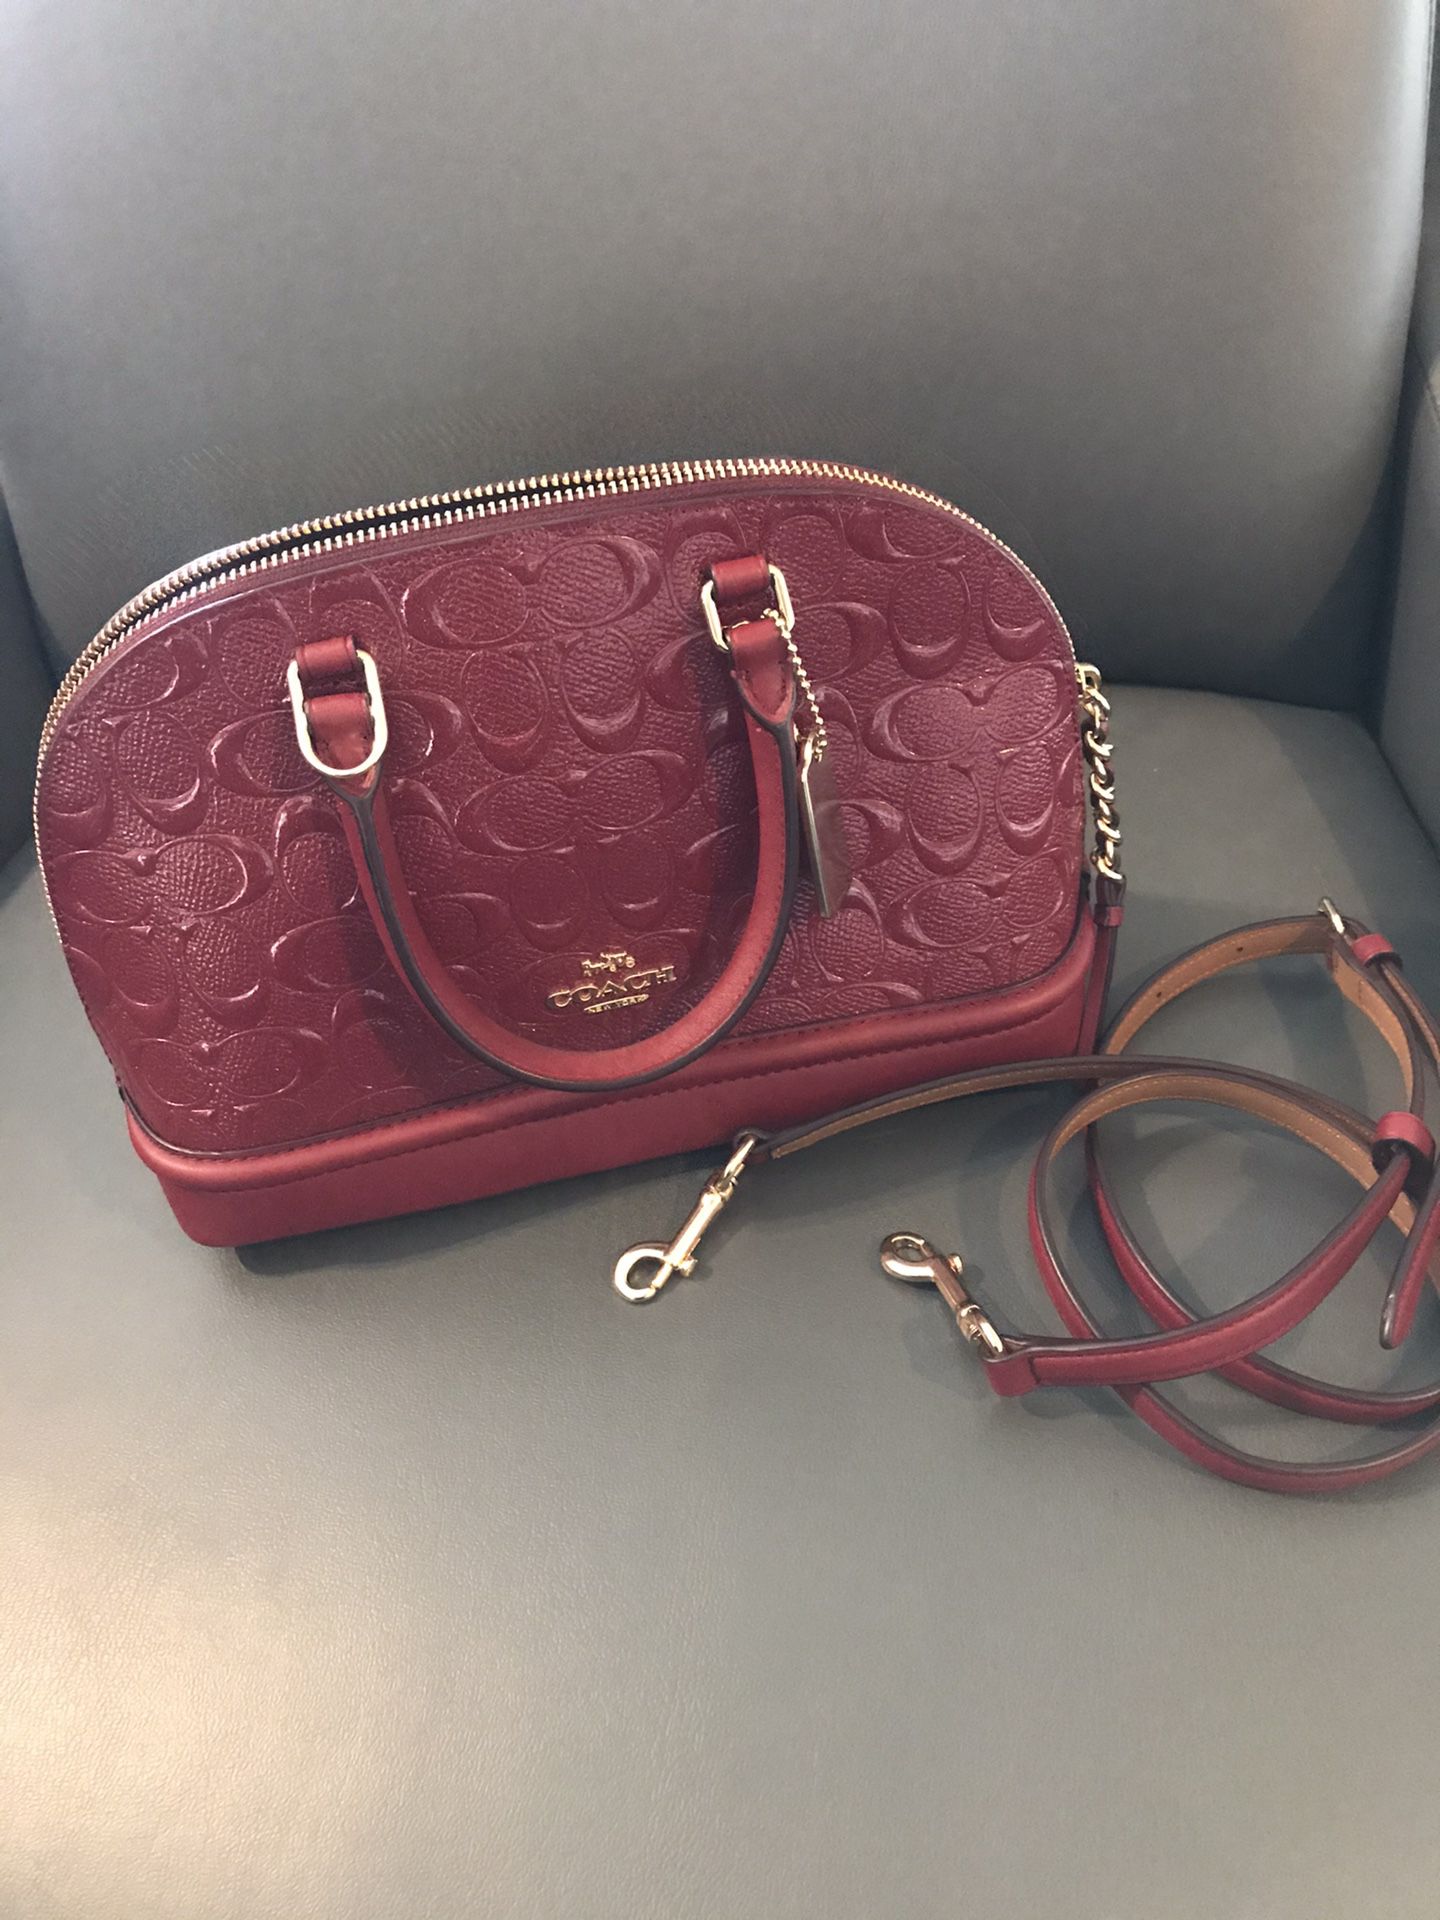 Coach mini satchel